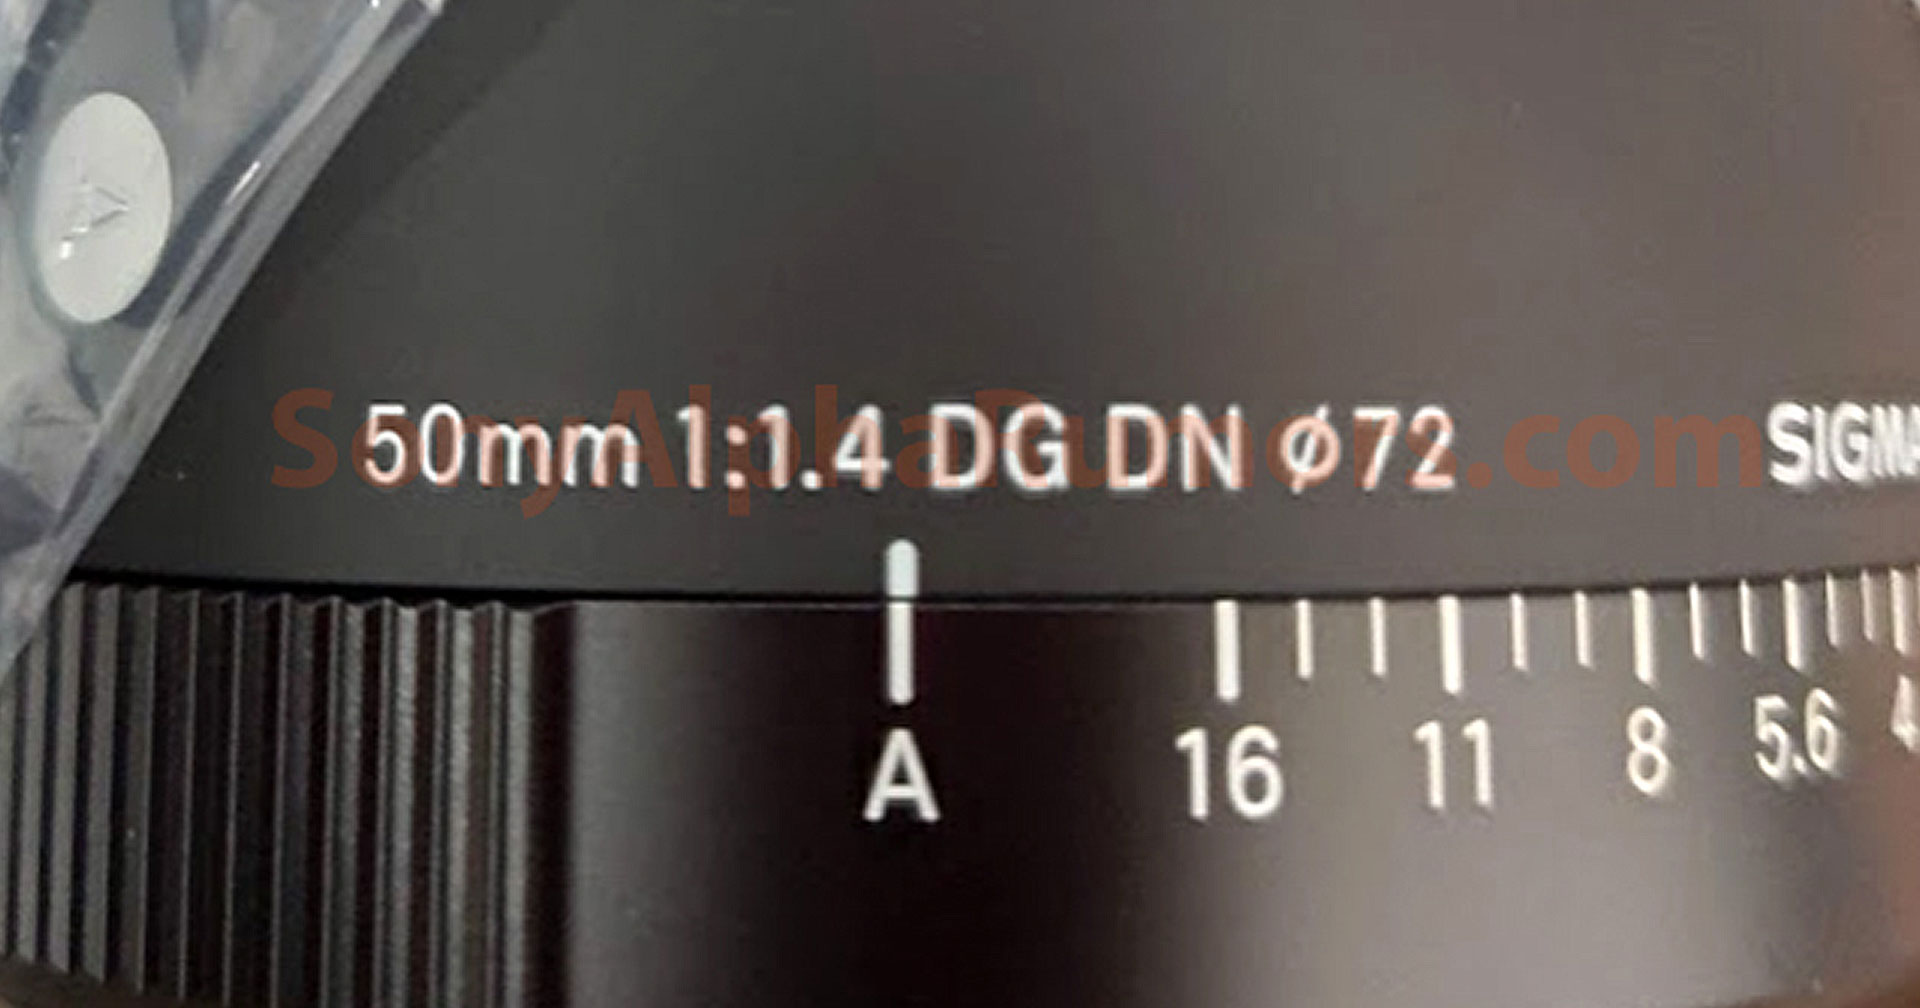 SIGMA เตรียมเปิดตัวของใหม่ 7 กุมภาพันธ์นี้ คาดคือ 50mm F1.4 DG DN Art